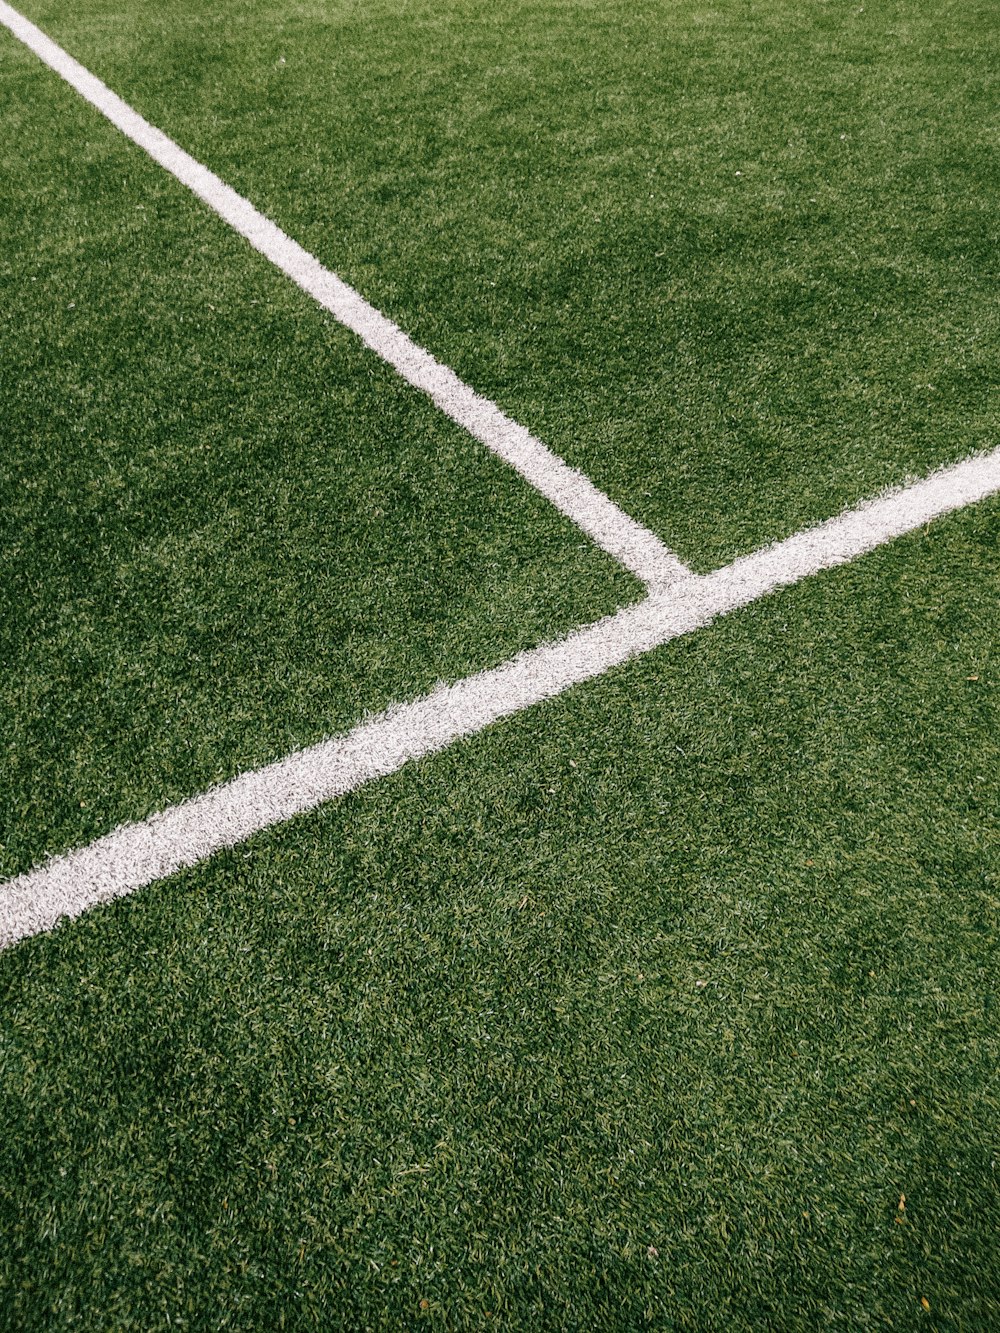 Un primer plano de una línea blanca en un campo de fútbol